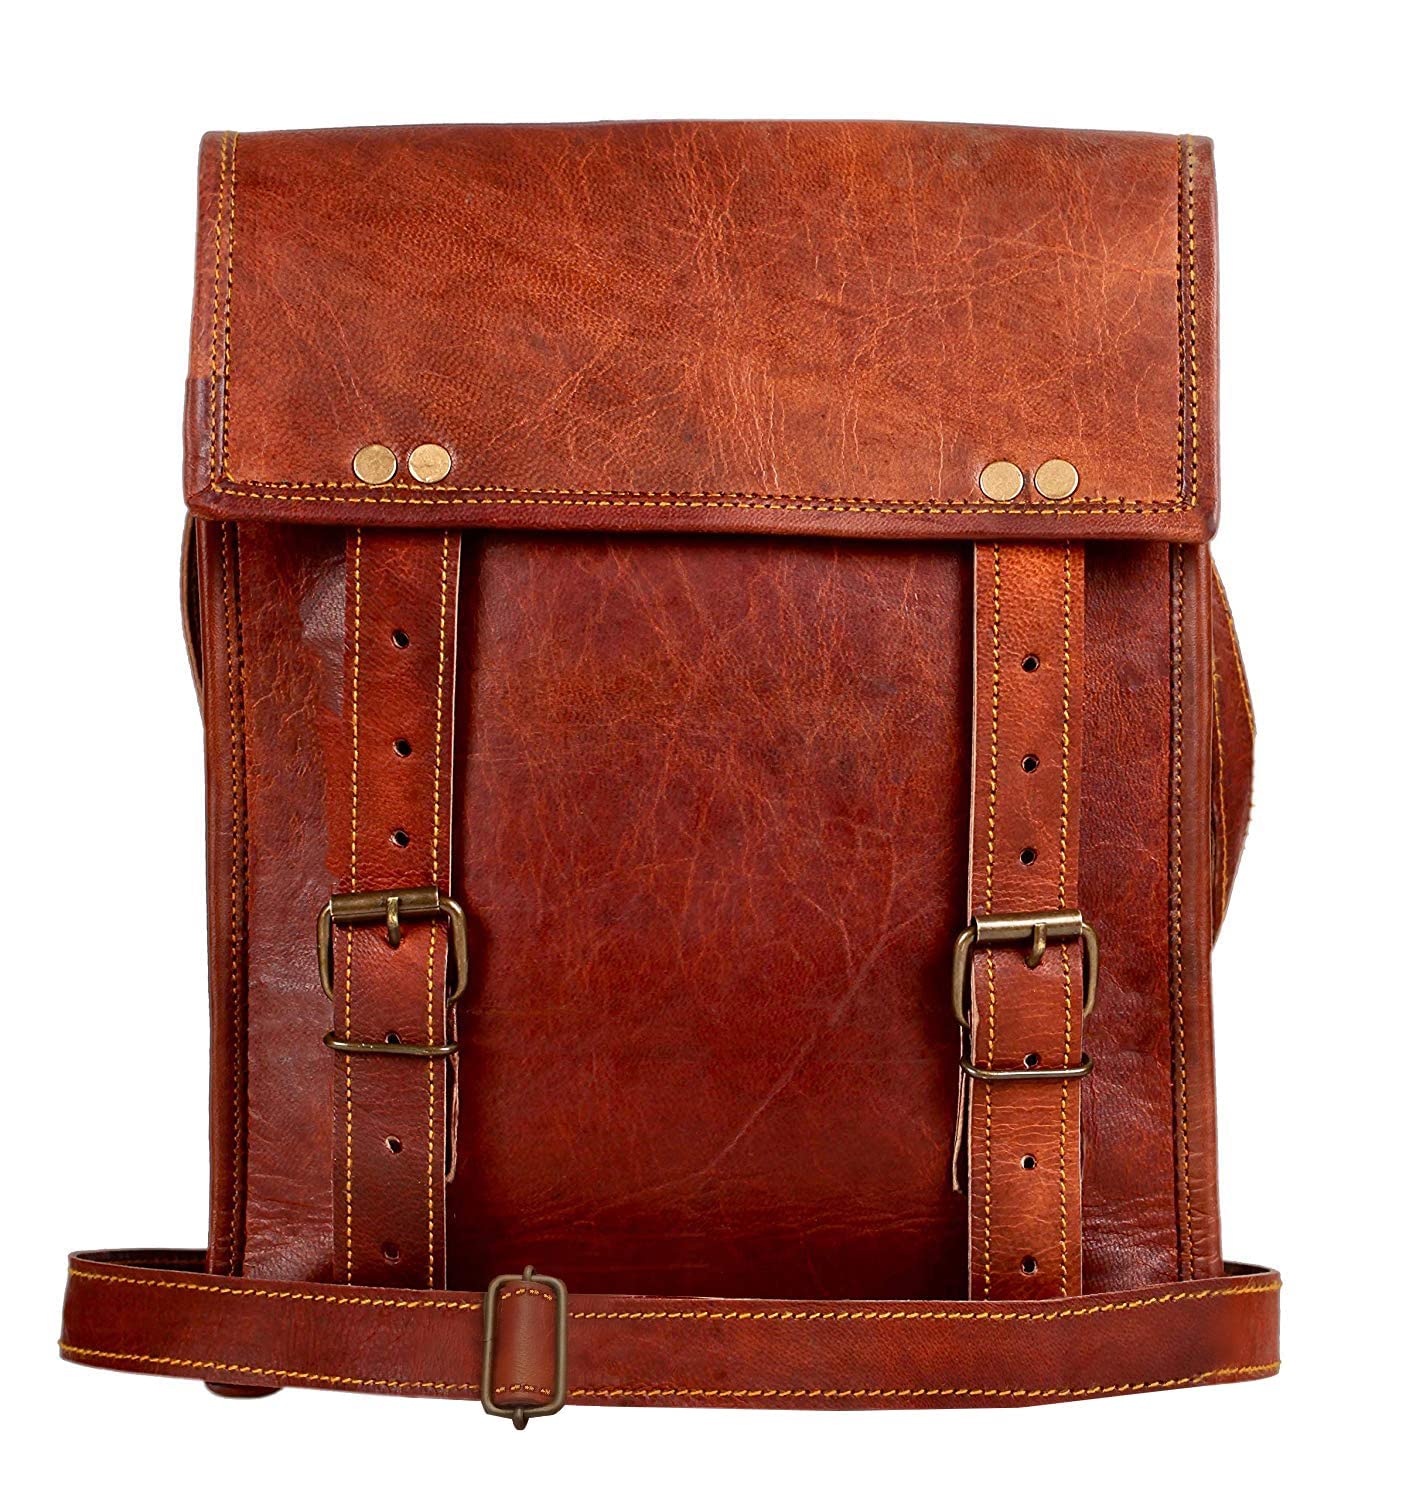 Amazon.com: Men's shoulder bag vertical 8 inch tablet handbag Messenger bag-black  : Clothing, Shoes & Jewelry